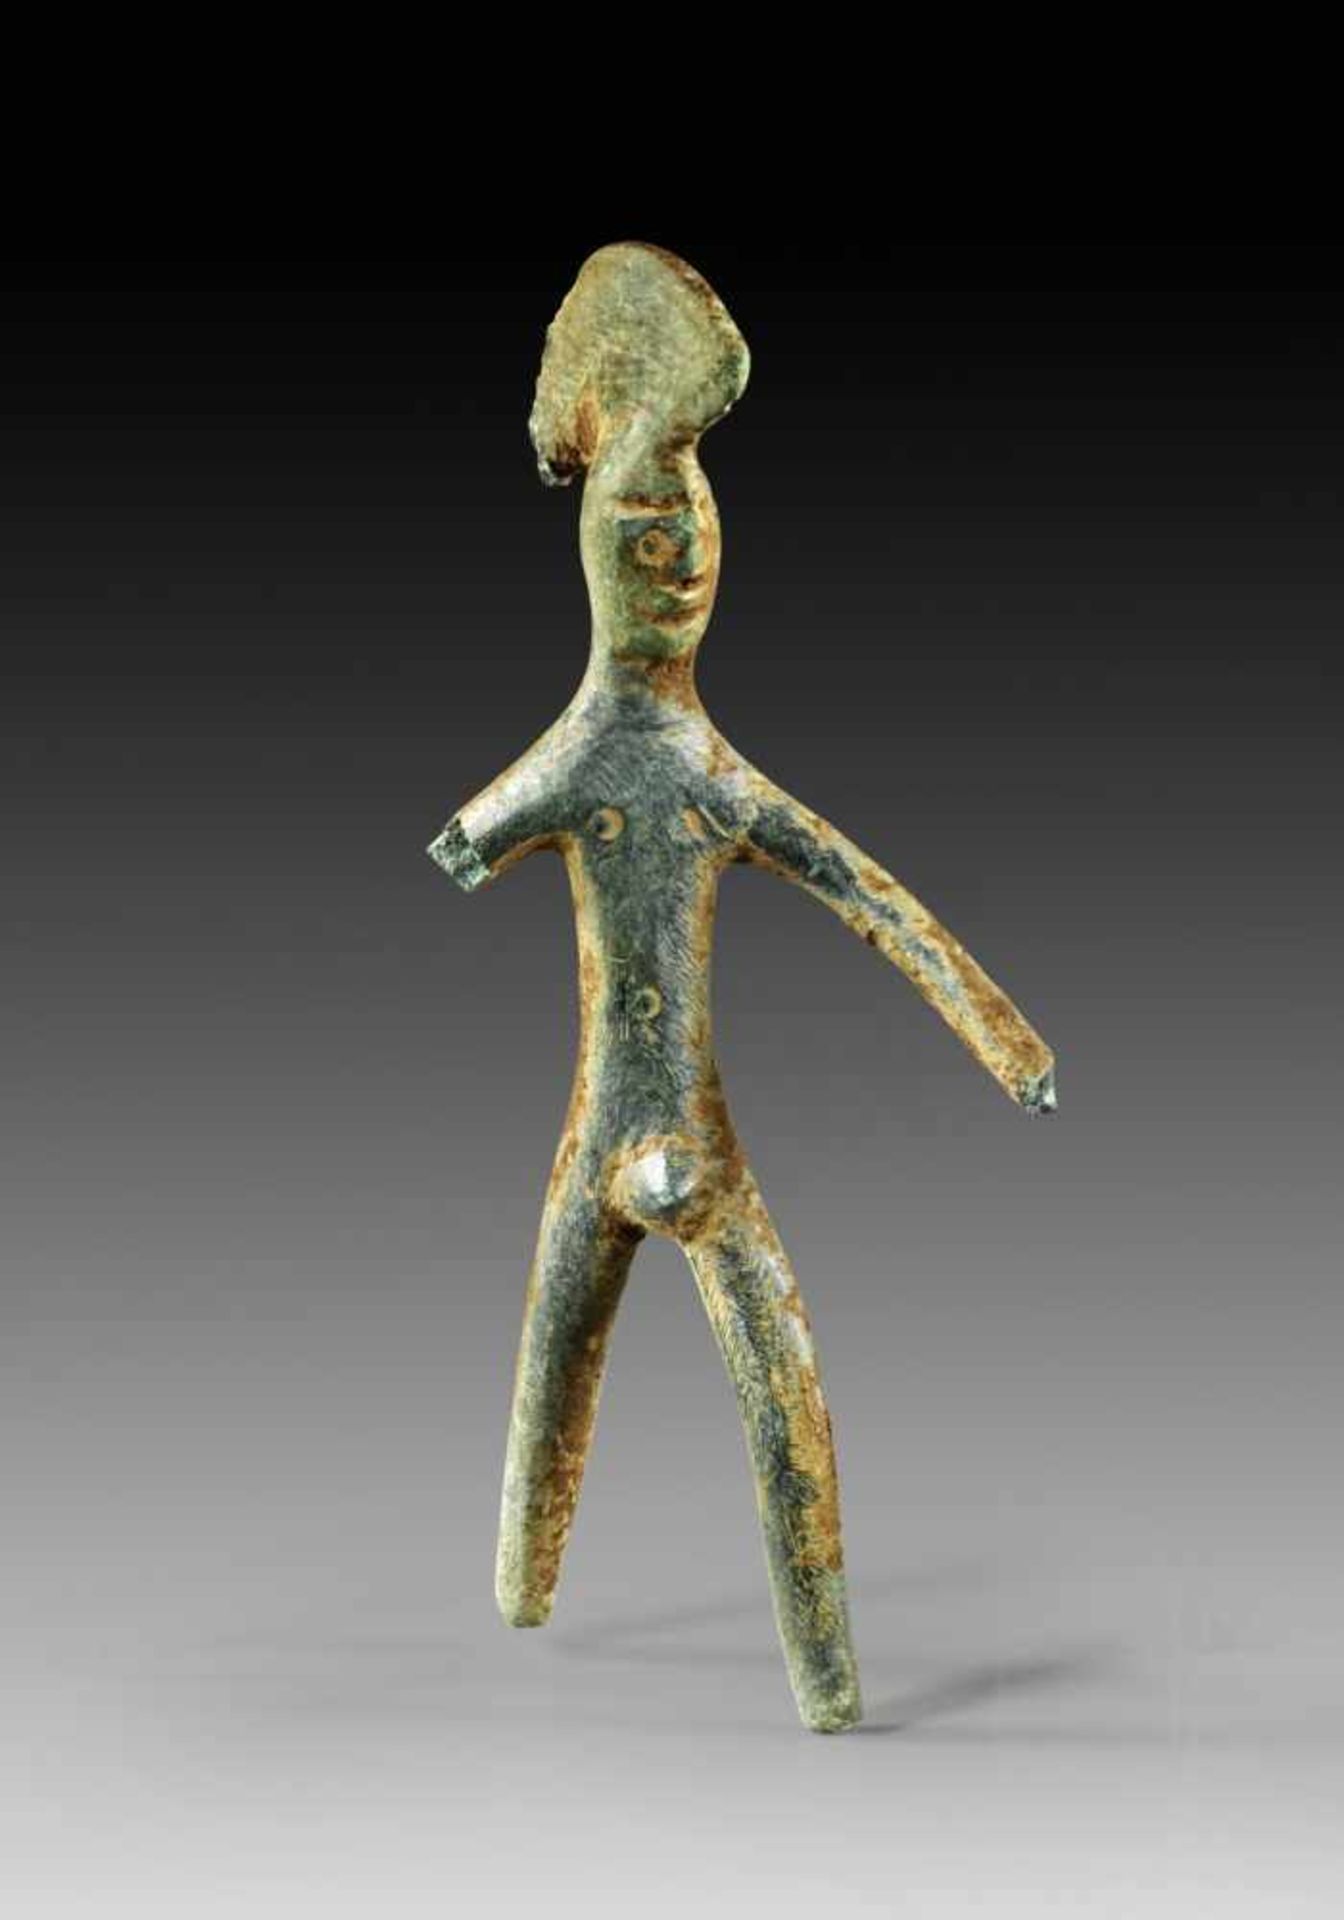 Kriegerfigur. Umbrien, ca. 5. Jh. v. Chr. L 7,5cm. Vollguss. Nackter, im Ausfallschritt stehender,